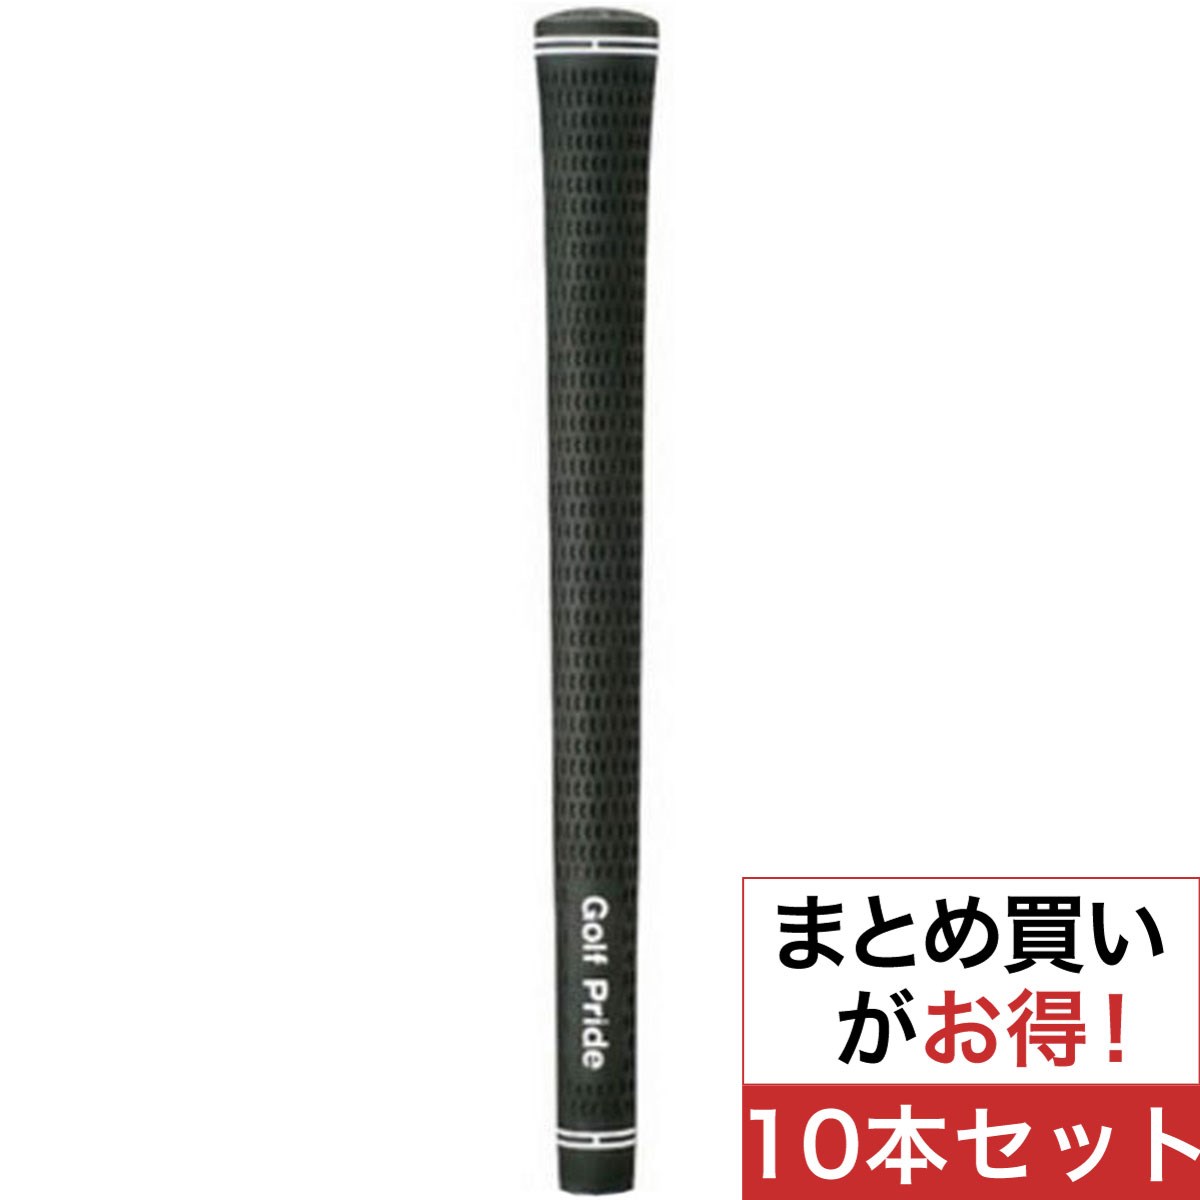 売り出し ゴルフプライド グリップ ツアーベルベットラバー 日本正規品 ゴルフ用品 ゴルフグリップ